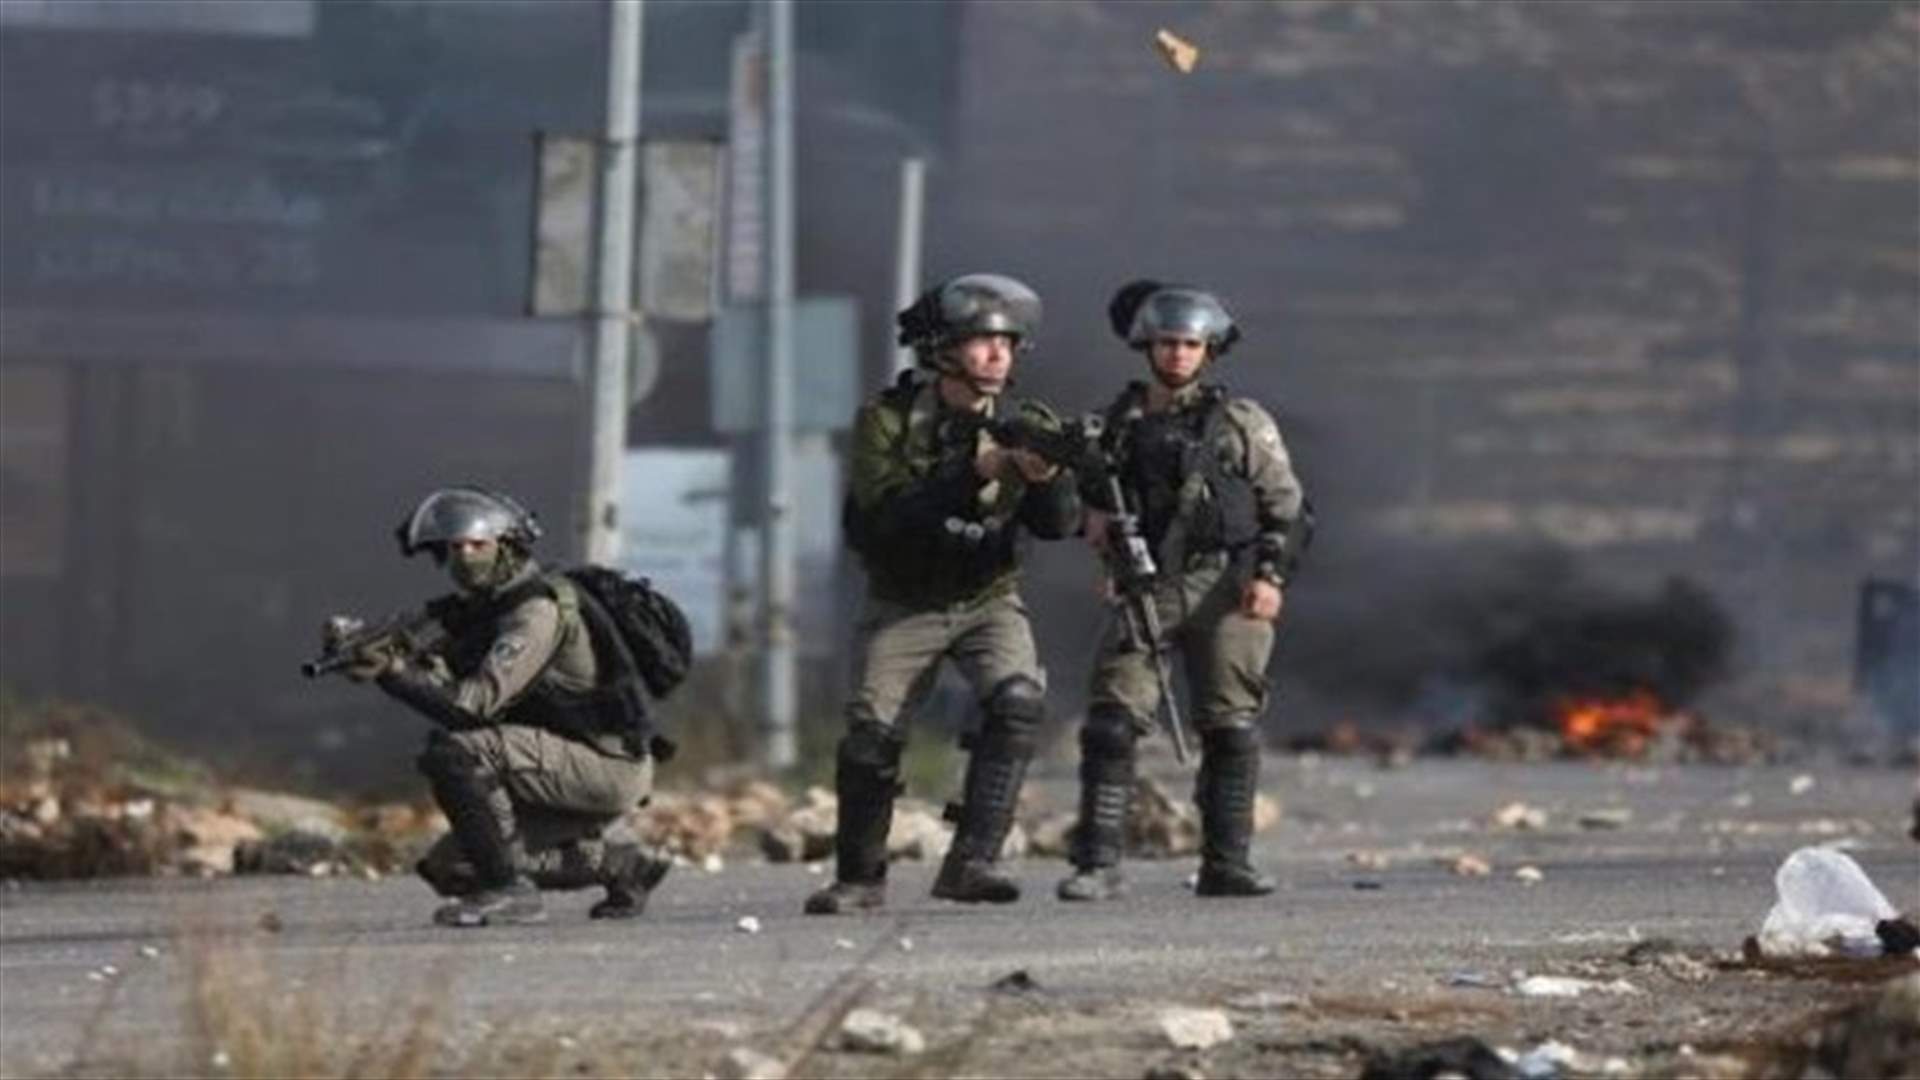 مقتل ثلاثة فلسطينيين بنيران جنود إسرائيليين قرب السياج الحدودي في غزة